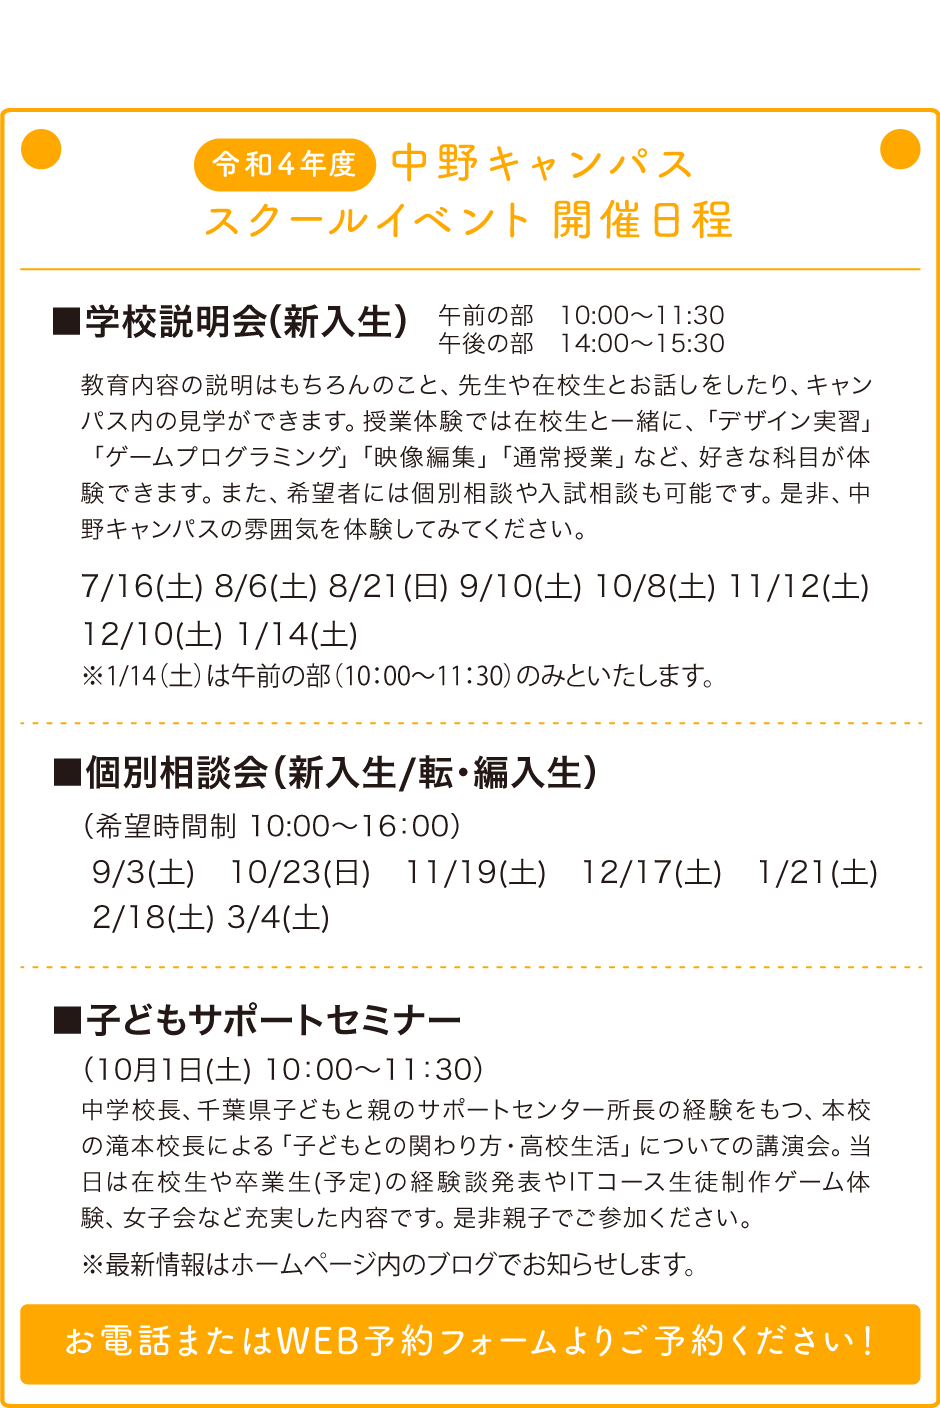 中野キャンパス スクールイベント開催日程